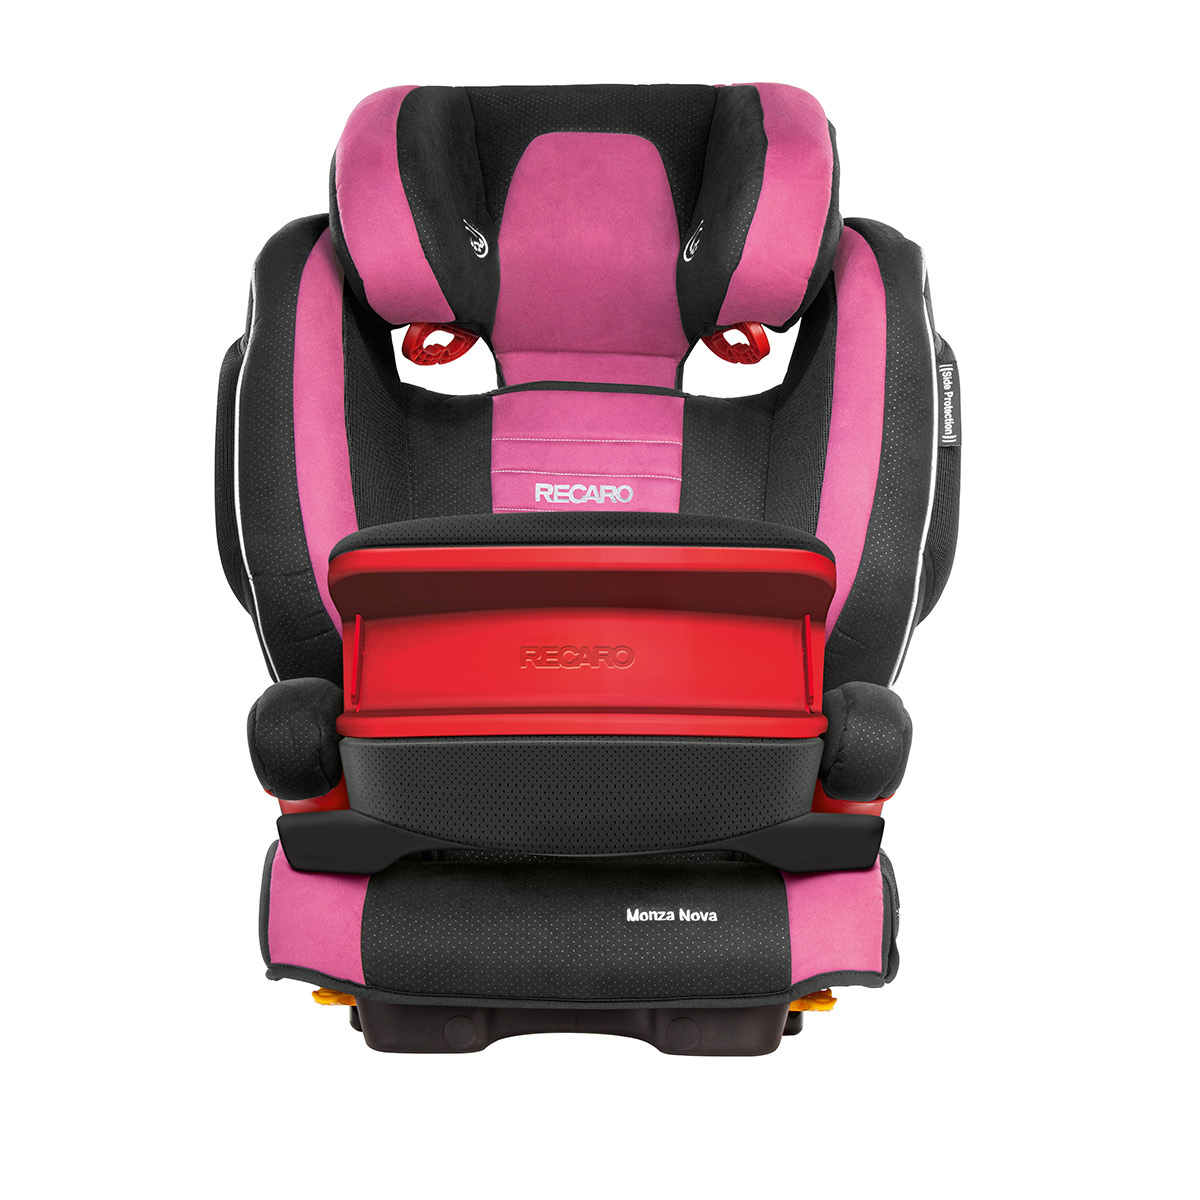 Recaro Monza Nova SeatFix IS 2015 21211 pink